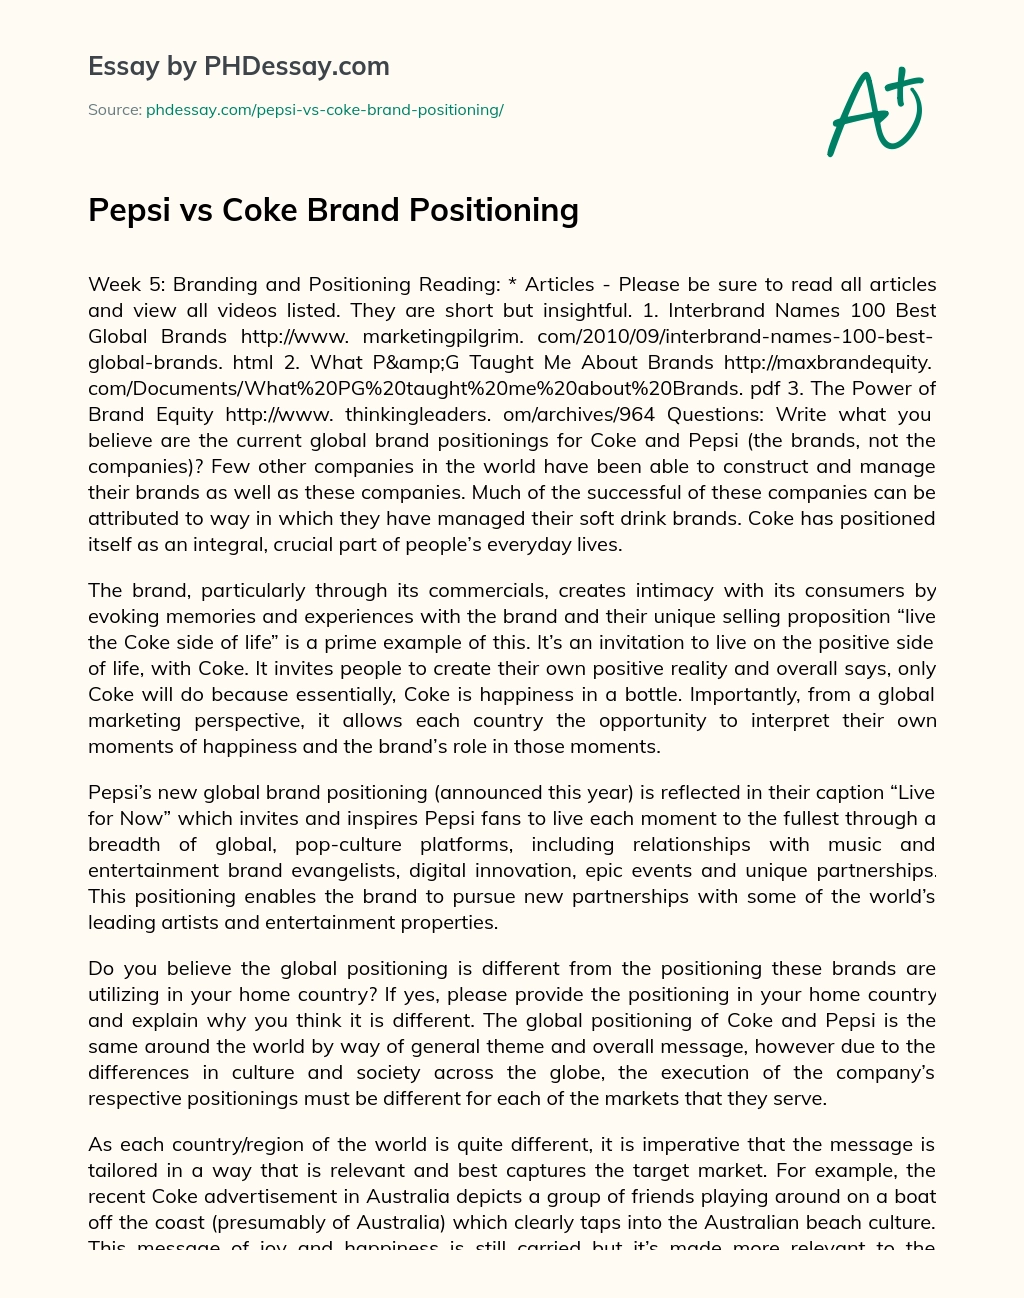 Pepsi vs Coke Brand Positioning essay